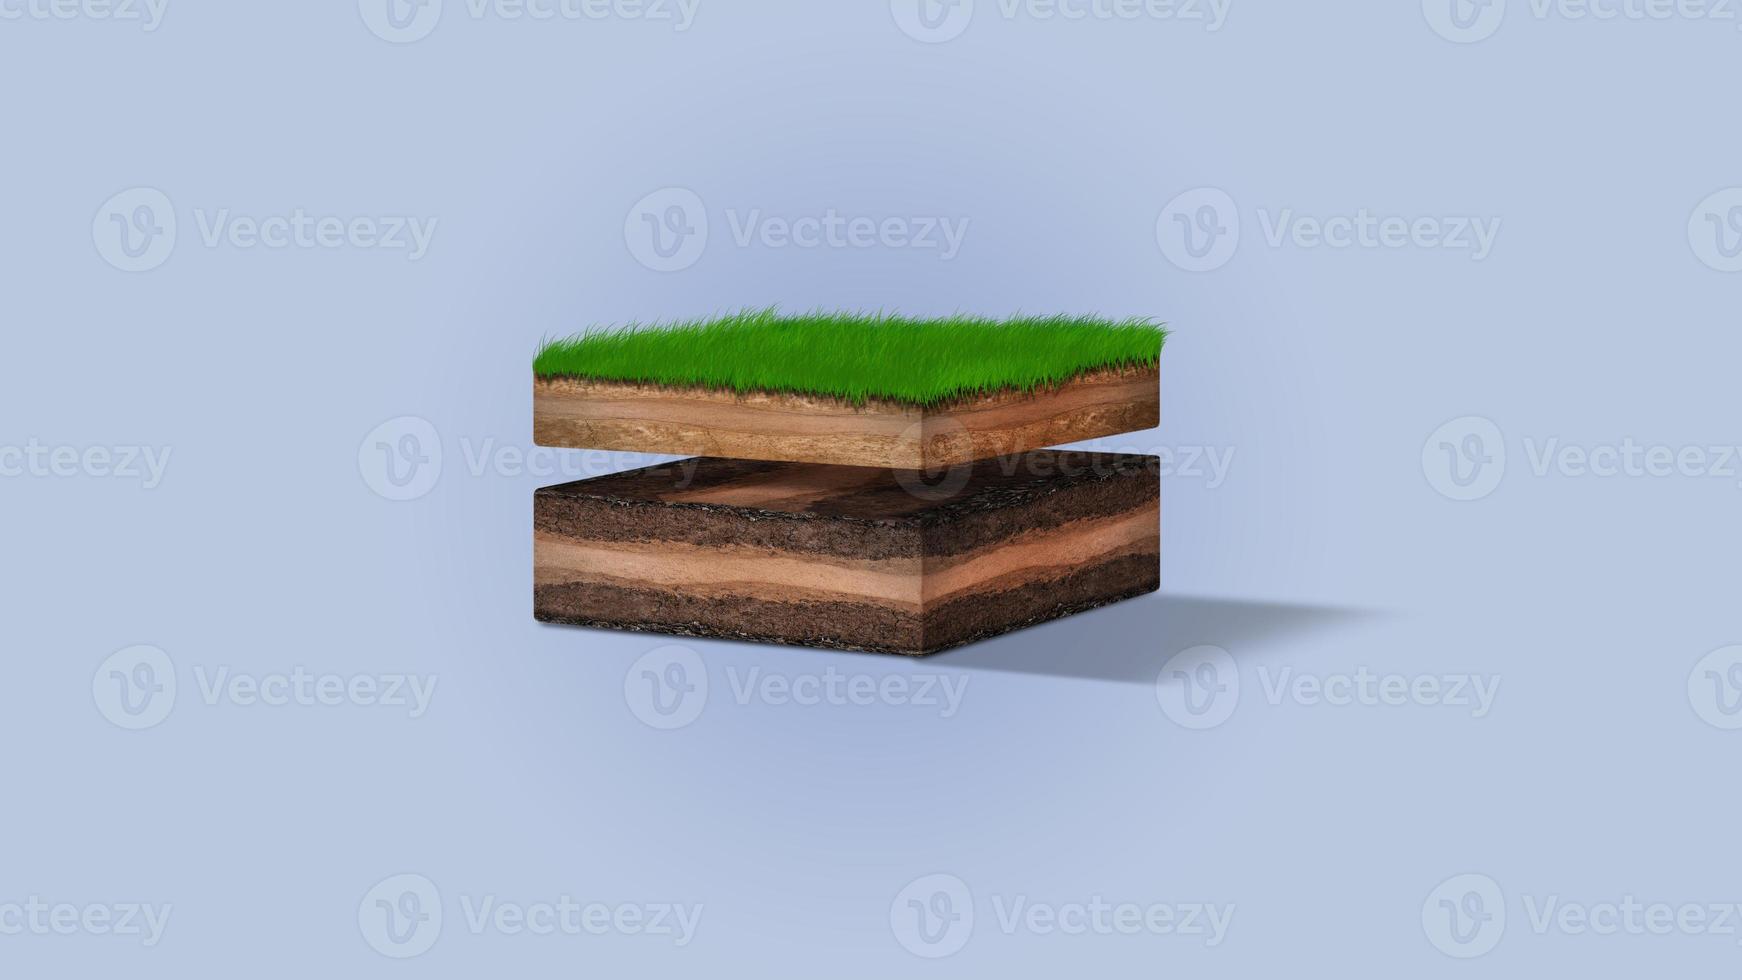 diagrama isométrico de camadas de solo, seção transversal de grama verde e camadas subterrâneas de solo abaixo, estrato de orgânicos, minerais, areia, argila, camadas isométricas de solo foto